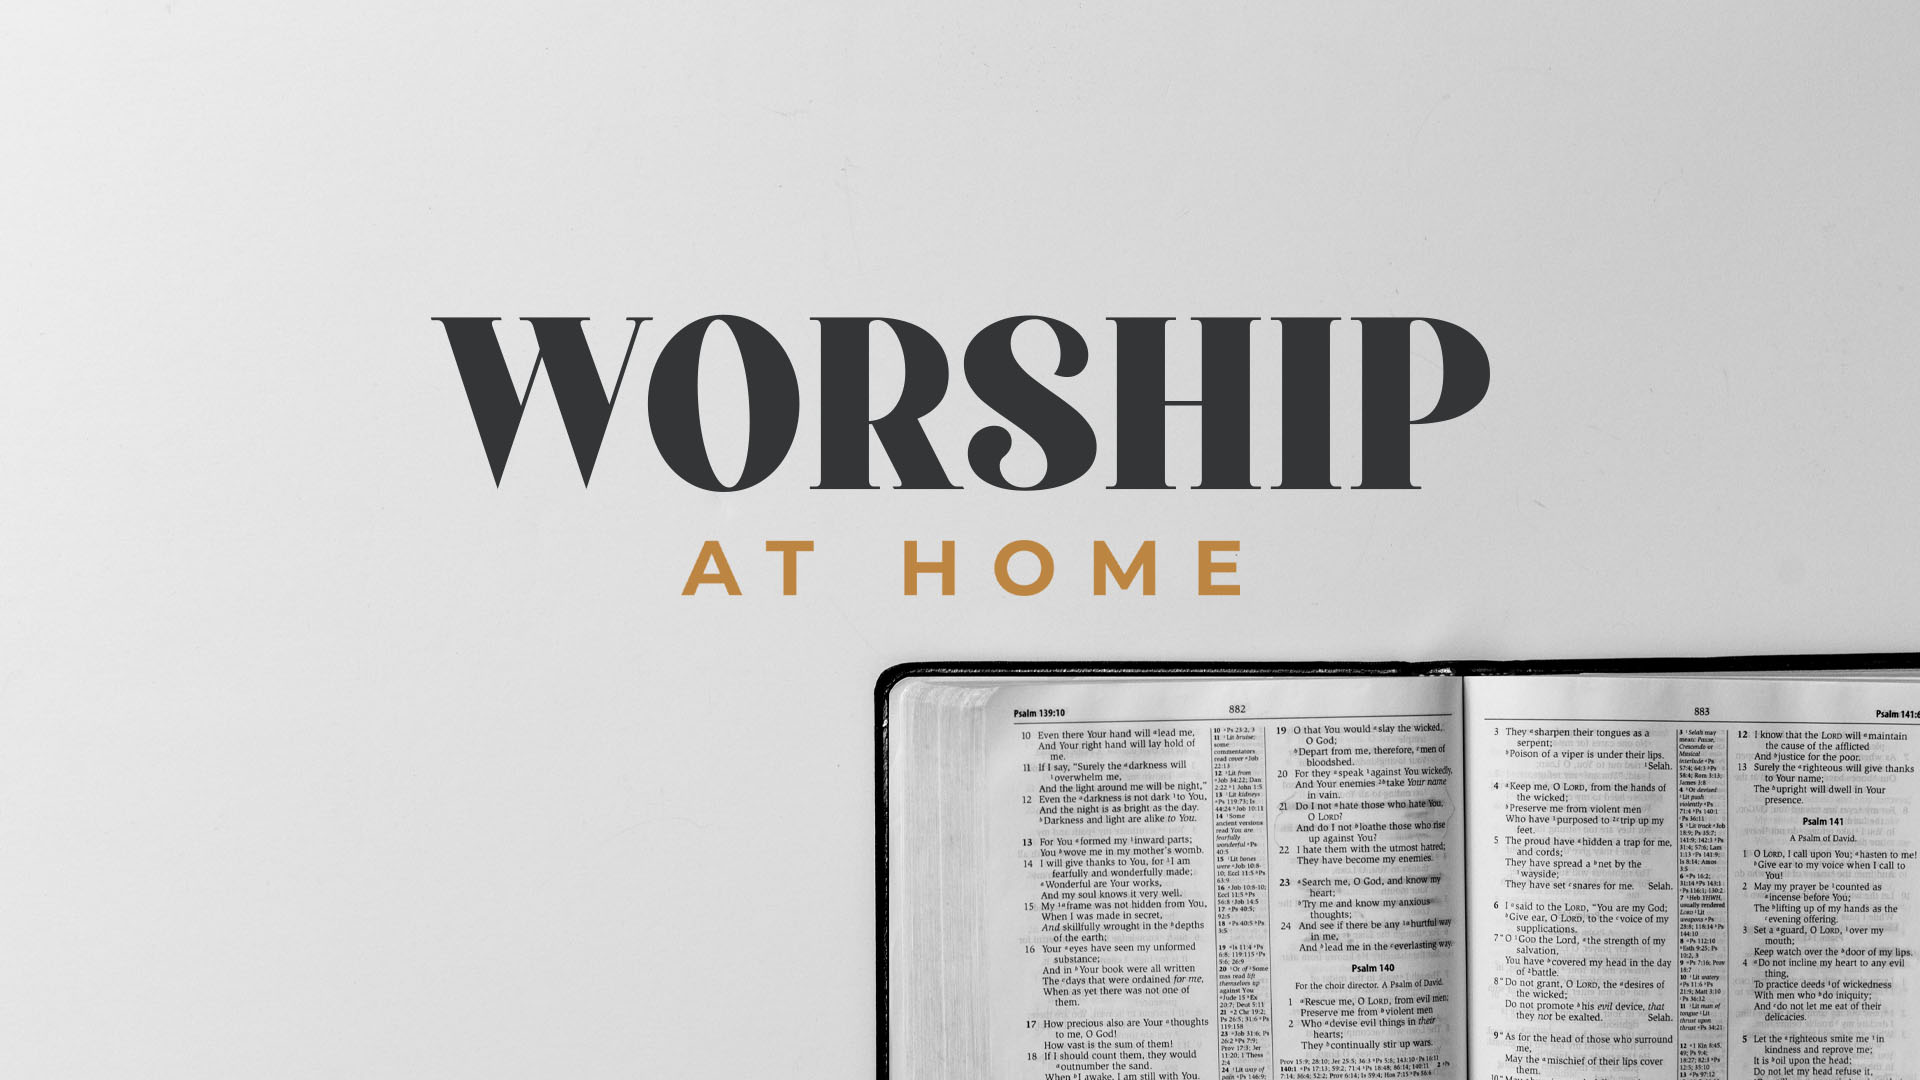 WORSHIP AT HOME